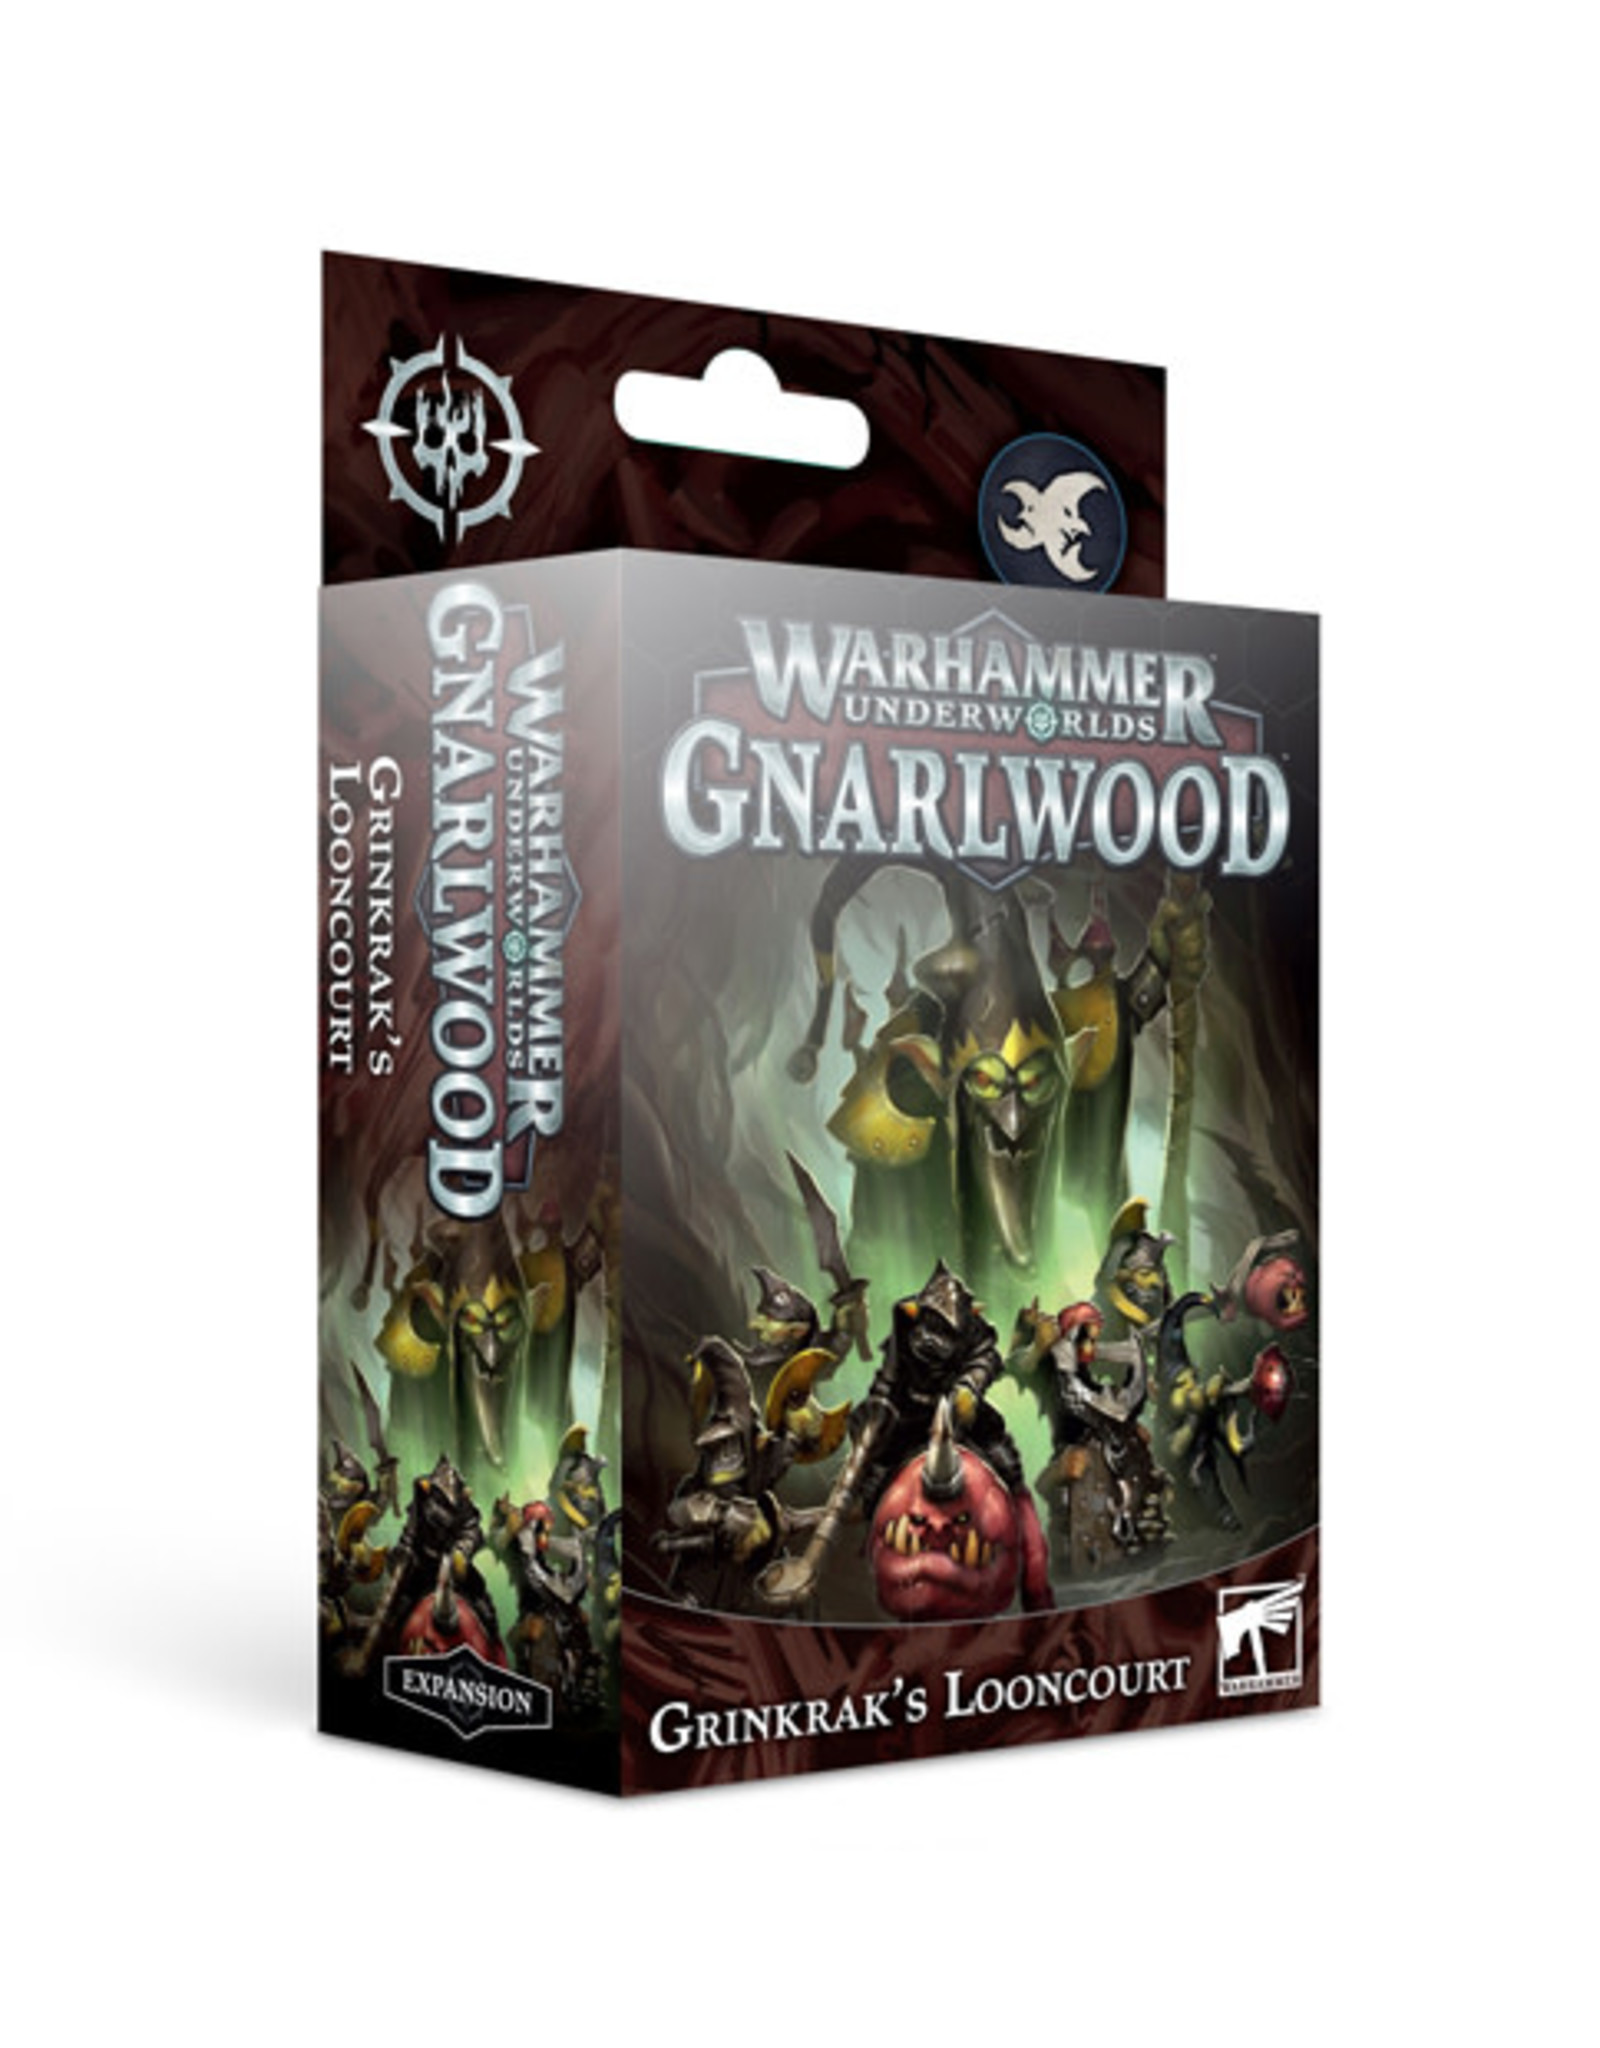 Warhammer Underworlds Grinkraks Looncourt